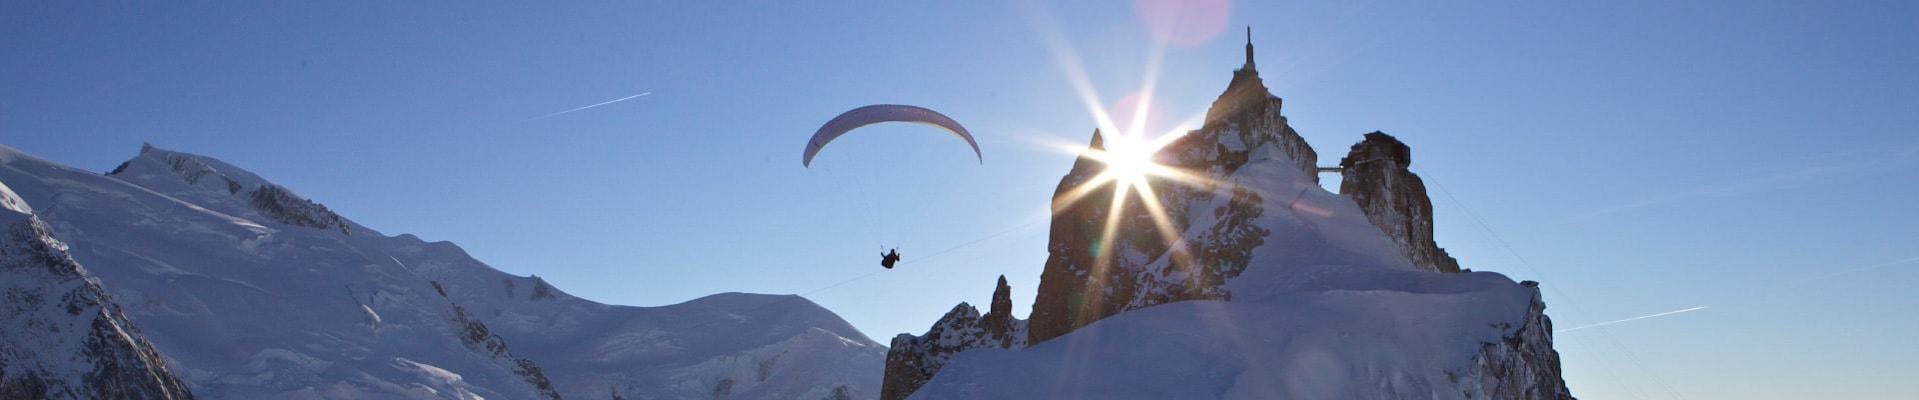 Een paraglidingpiloot van Kailash Paragliding doet een tandemparaglidingvlucht vanaf de Aiguille du midi tegen een bergachtige achtergrond.